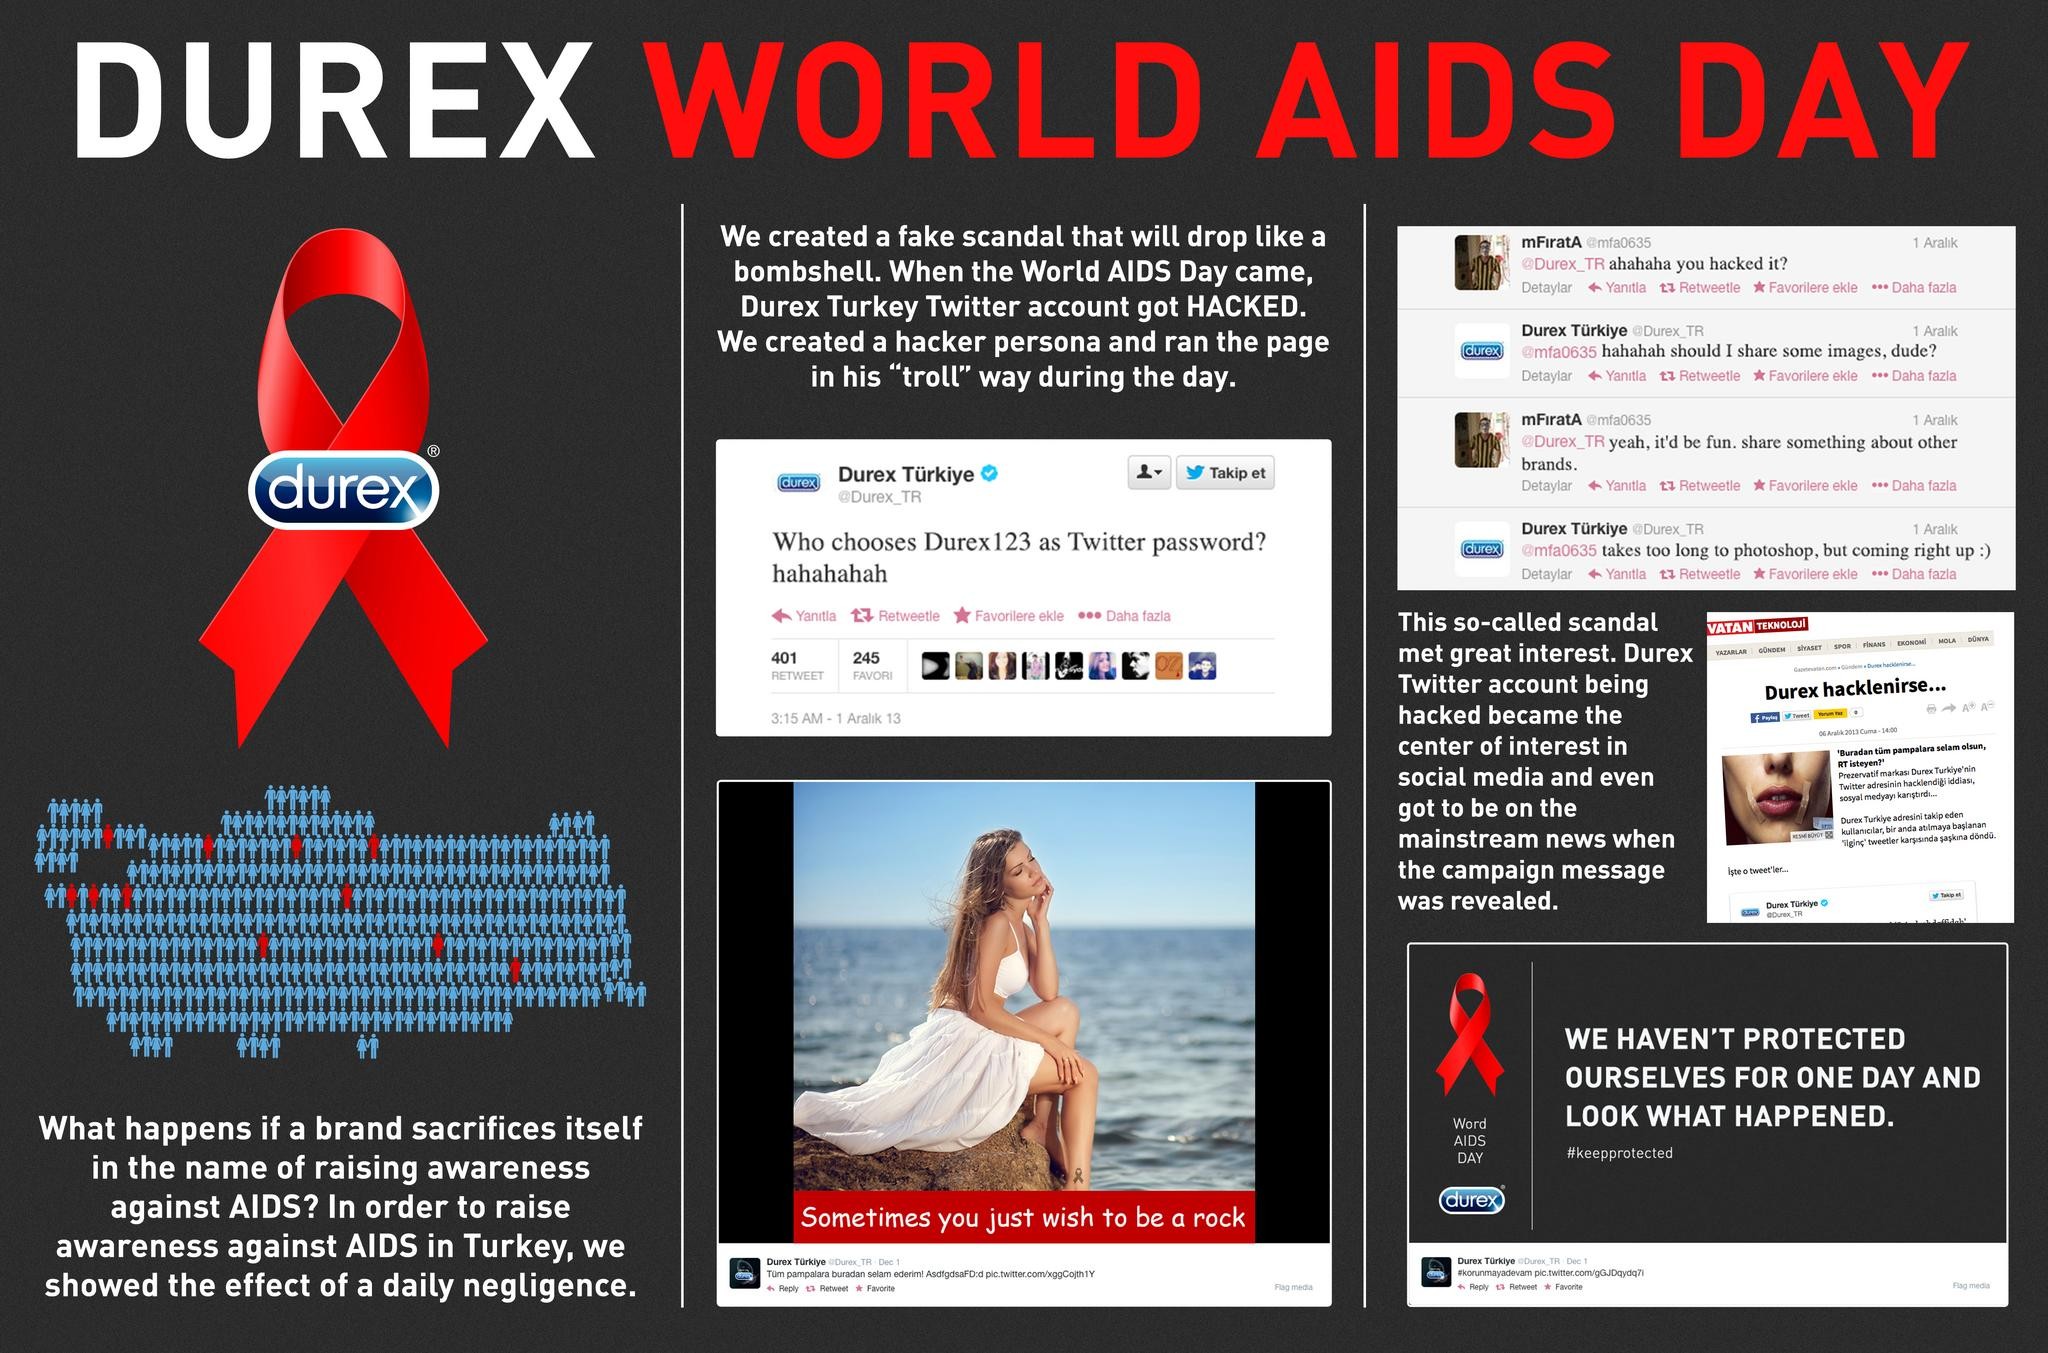 DUREX WORLD AIDS DAY